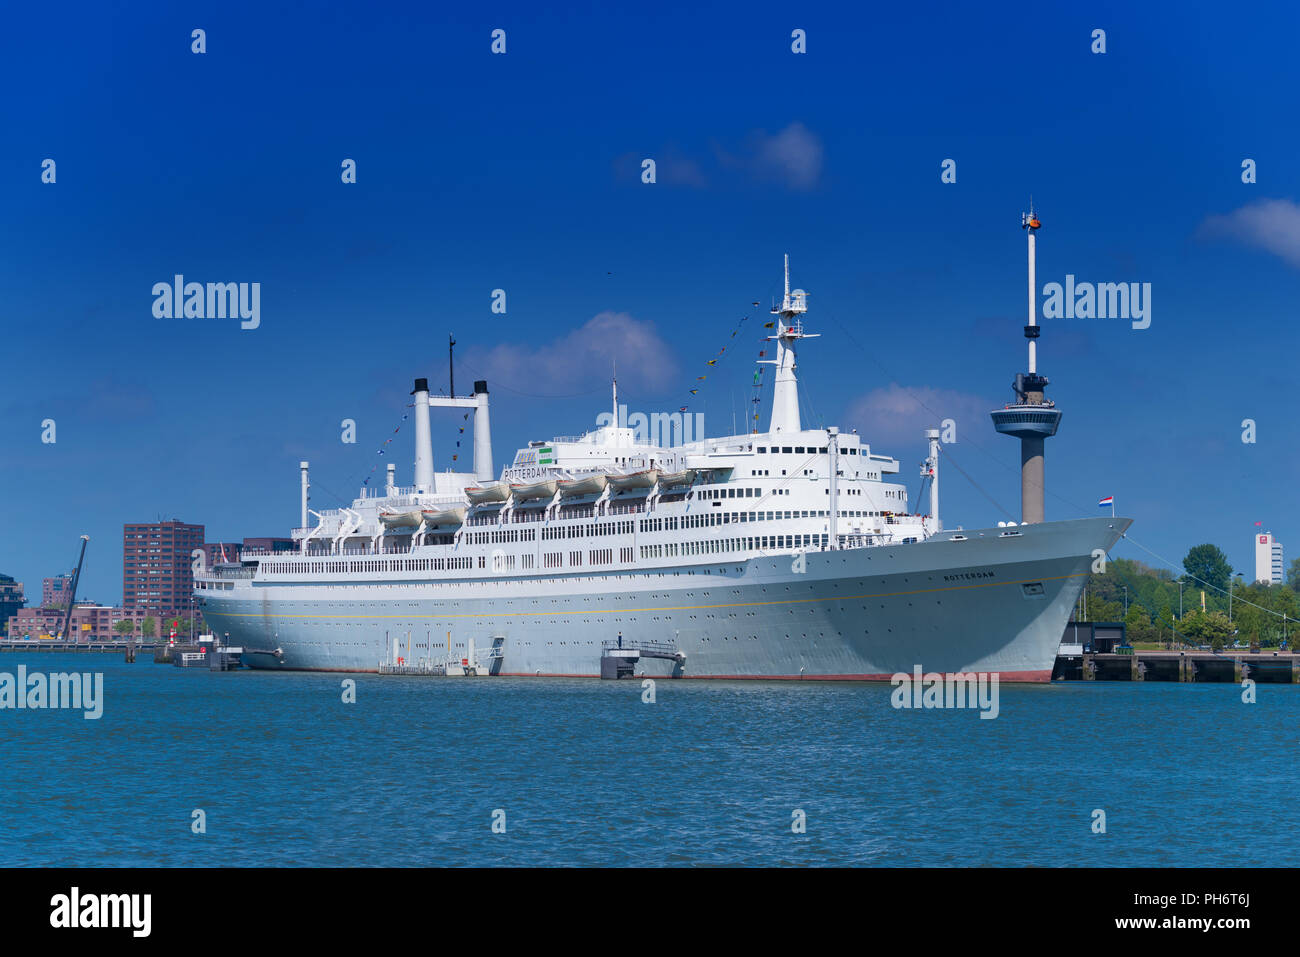 ROTTERDAM, Niederlande - 6. Mai 2017: Ehemalige Kreuzfahrtschiff SS Rotterdam, ein Dampfschiff mit Öl-gefeuerten Dampfkessel und Dampfturbinen. Seit 2008 ist es m Stockfoto